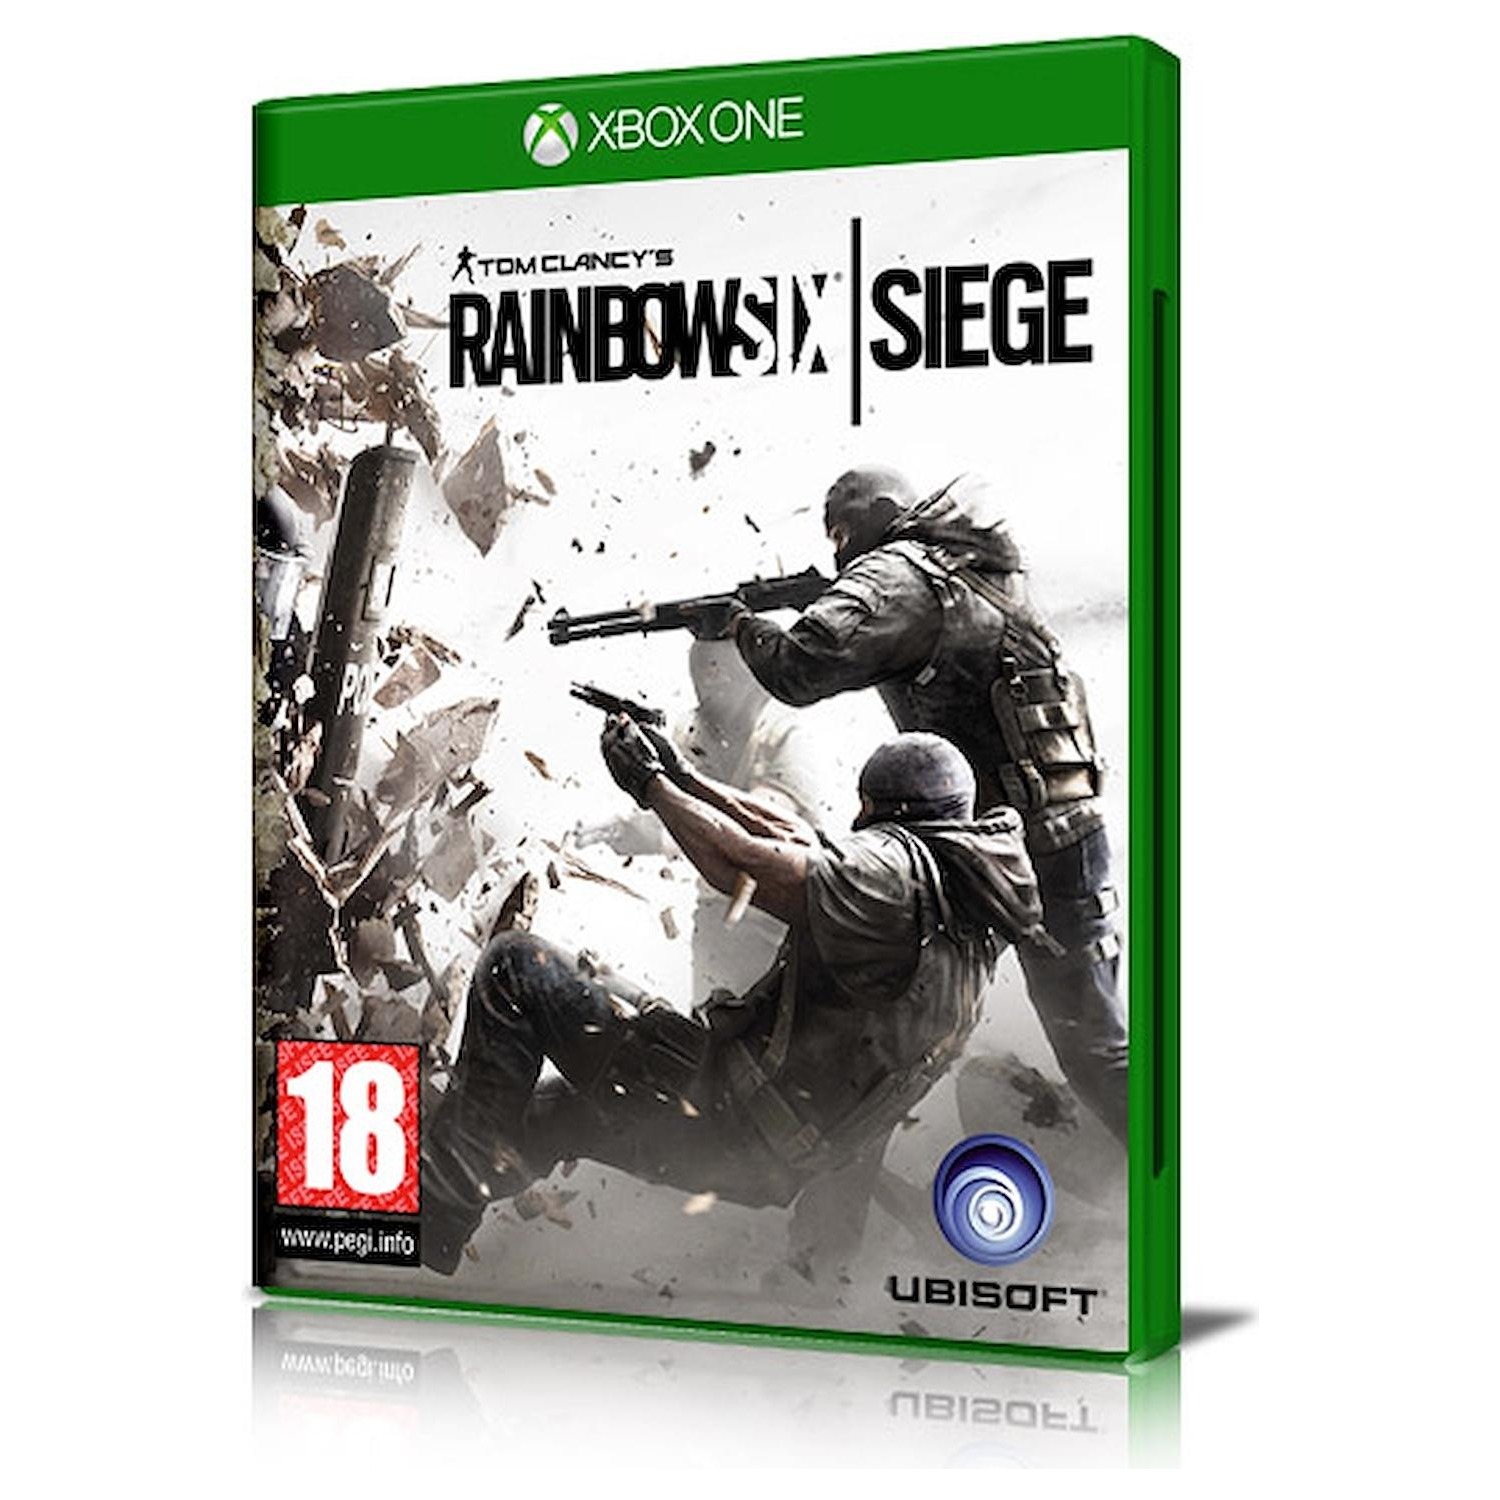 Immagine per Gioco XBOX ONE Rainbow Six Siege da DIMOStore